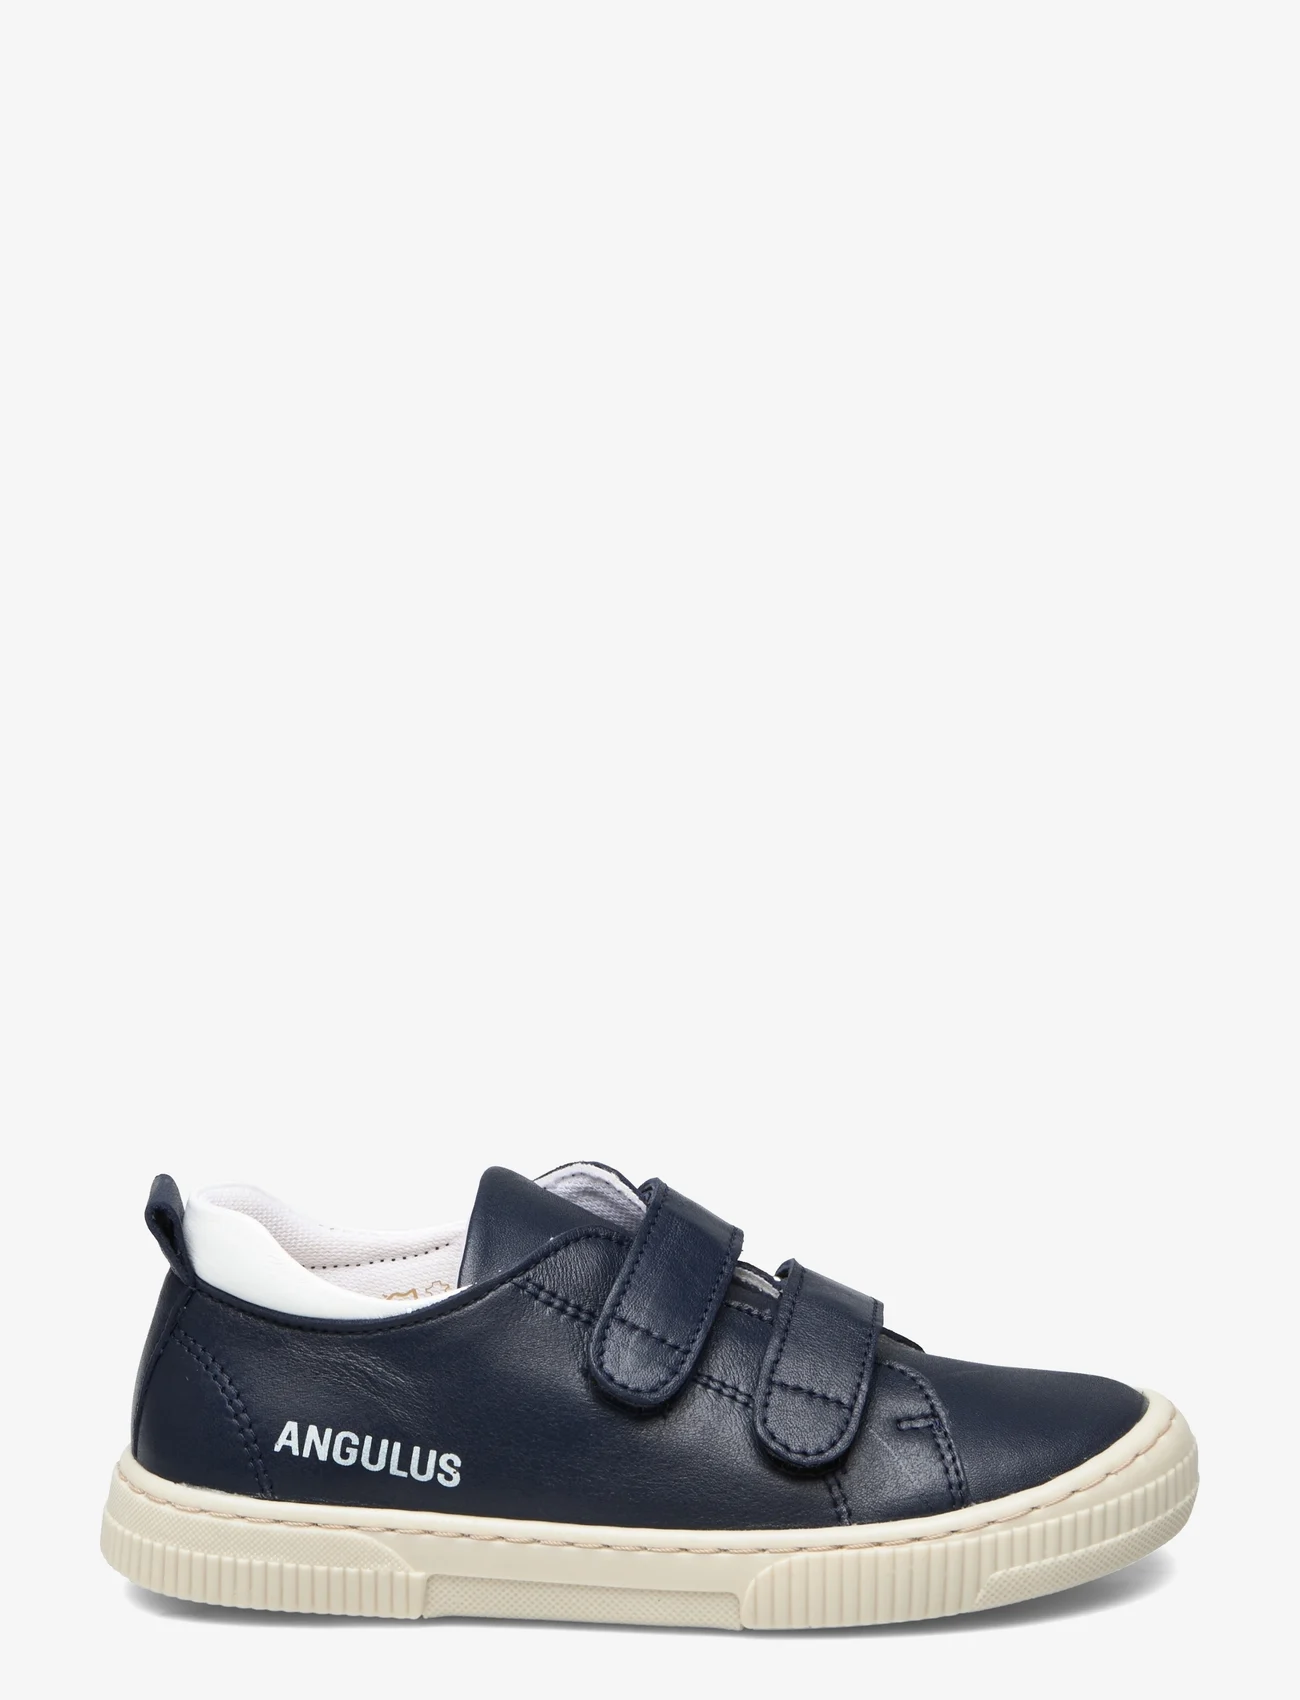 ANGULUS - Shoes - flat - with velcro - kesälöytöjä - 2585/1521 navy/white - 1